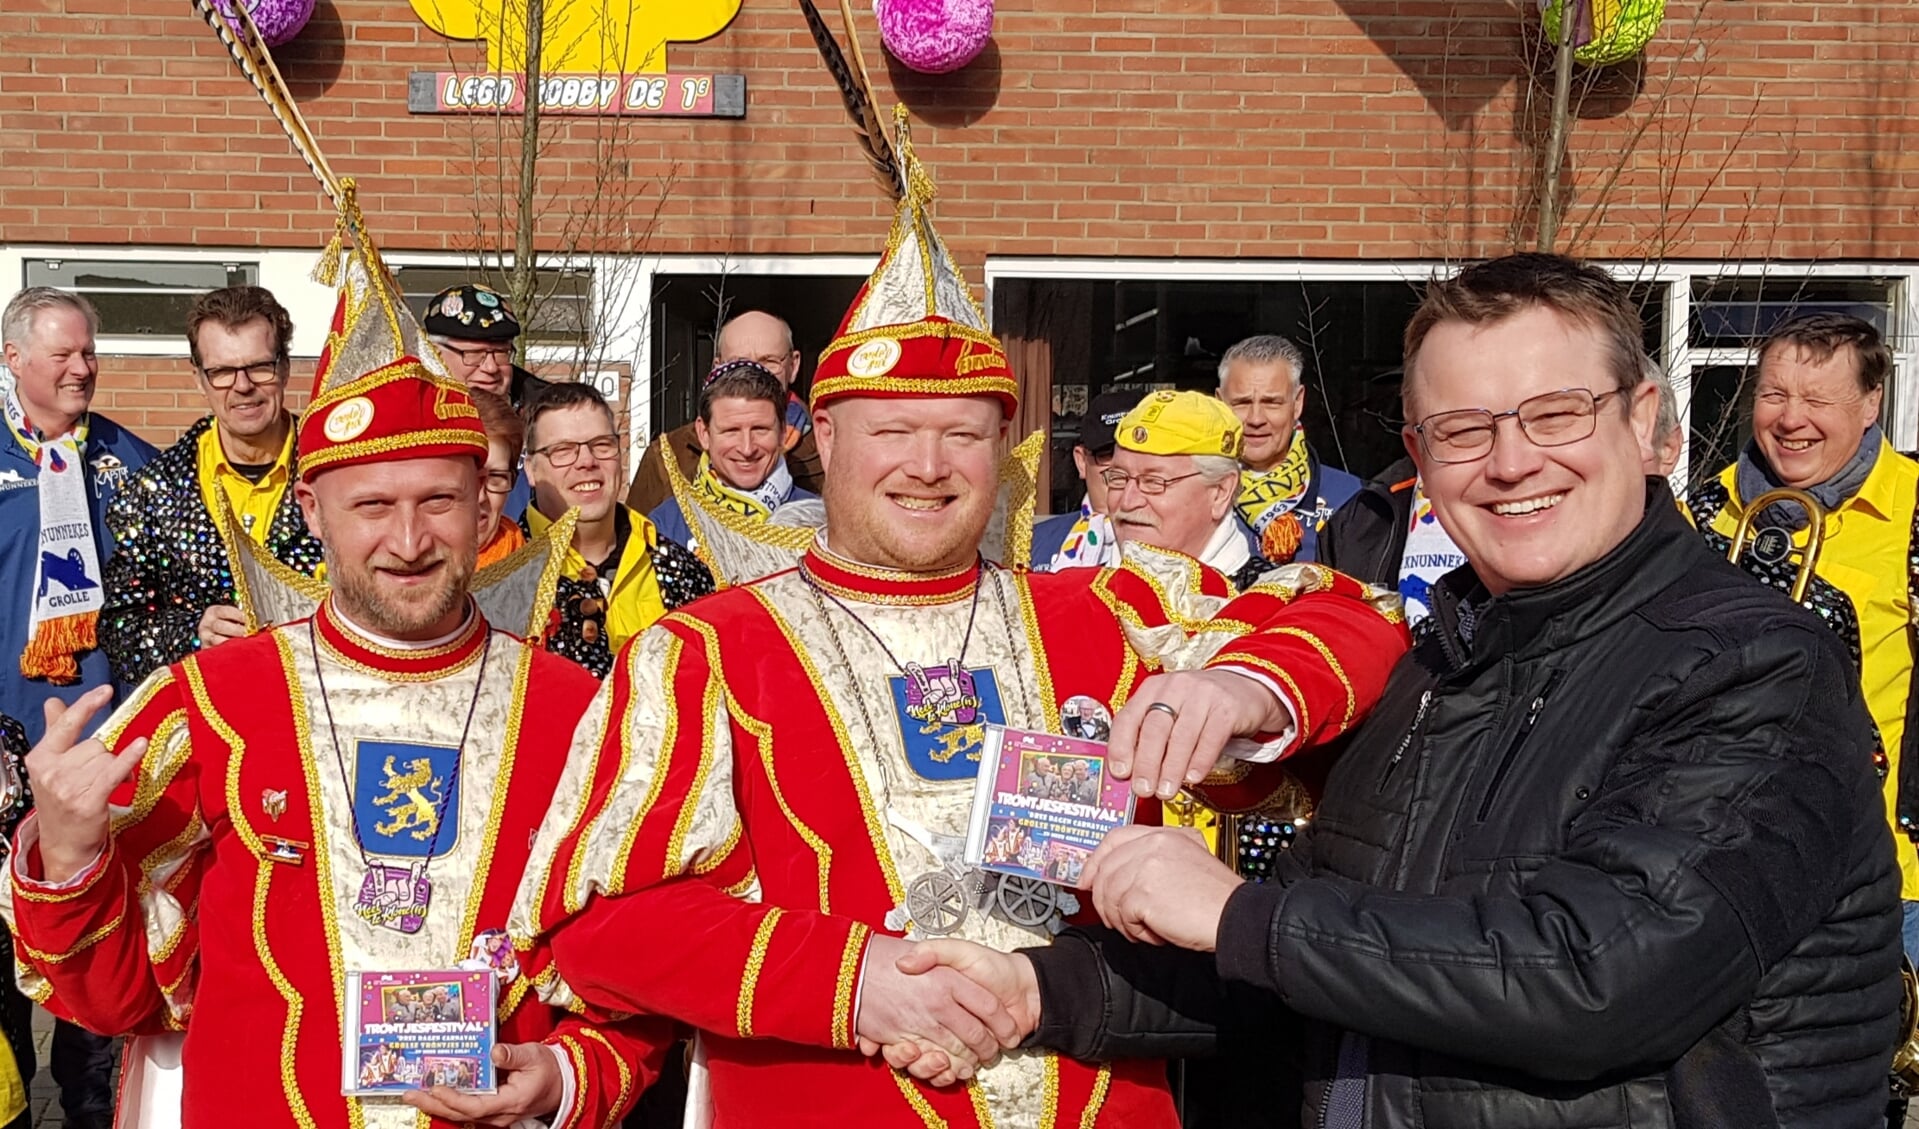 Prins Edwin en Adjudant Robby (links) krijgen uit handen van Klone's buurman en organisator Tröntjesfestival, Christof Elsinghorst, de Tröntjescd uitgereikt.